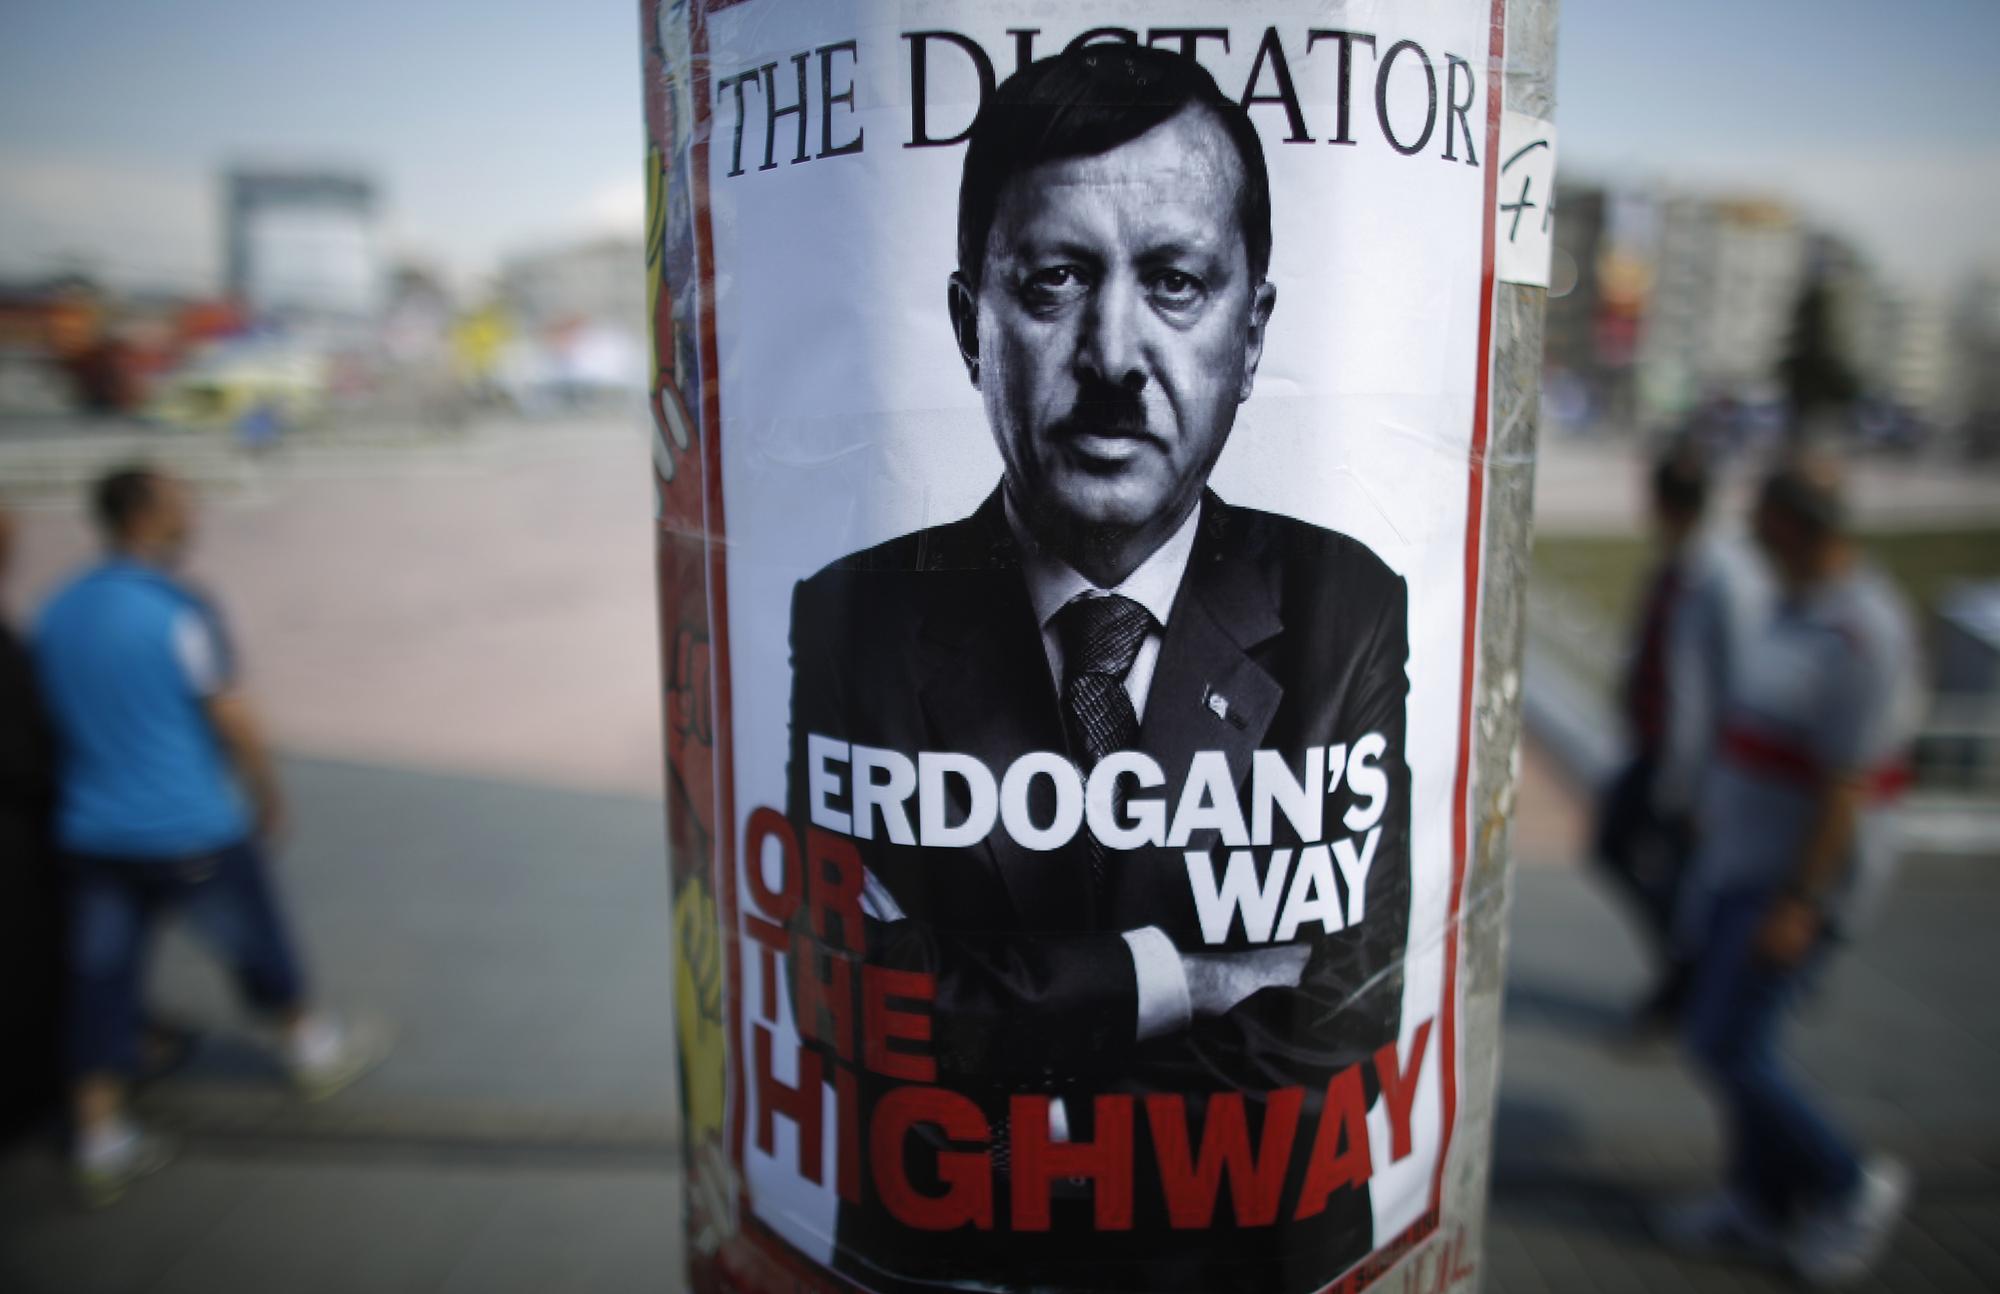 Une affiche dépeignant le Premier ministre turc Erdogan comme un dictateur sur la place Taksim, mercredi 5 juin 2013. [REUTERS - REUTERS/Stoyan Nenov]